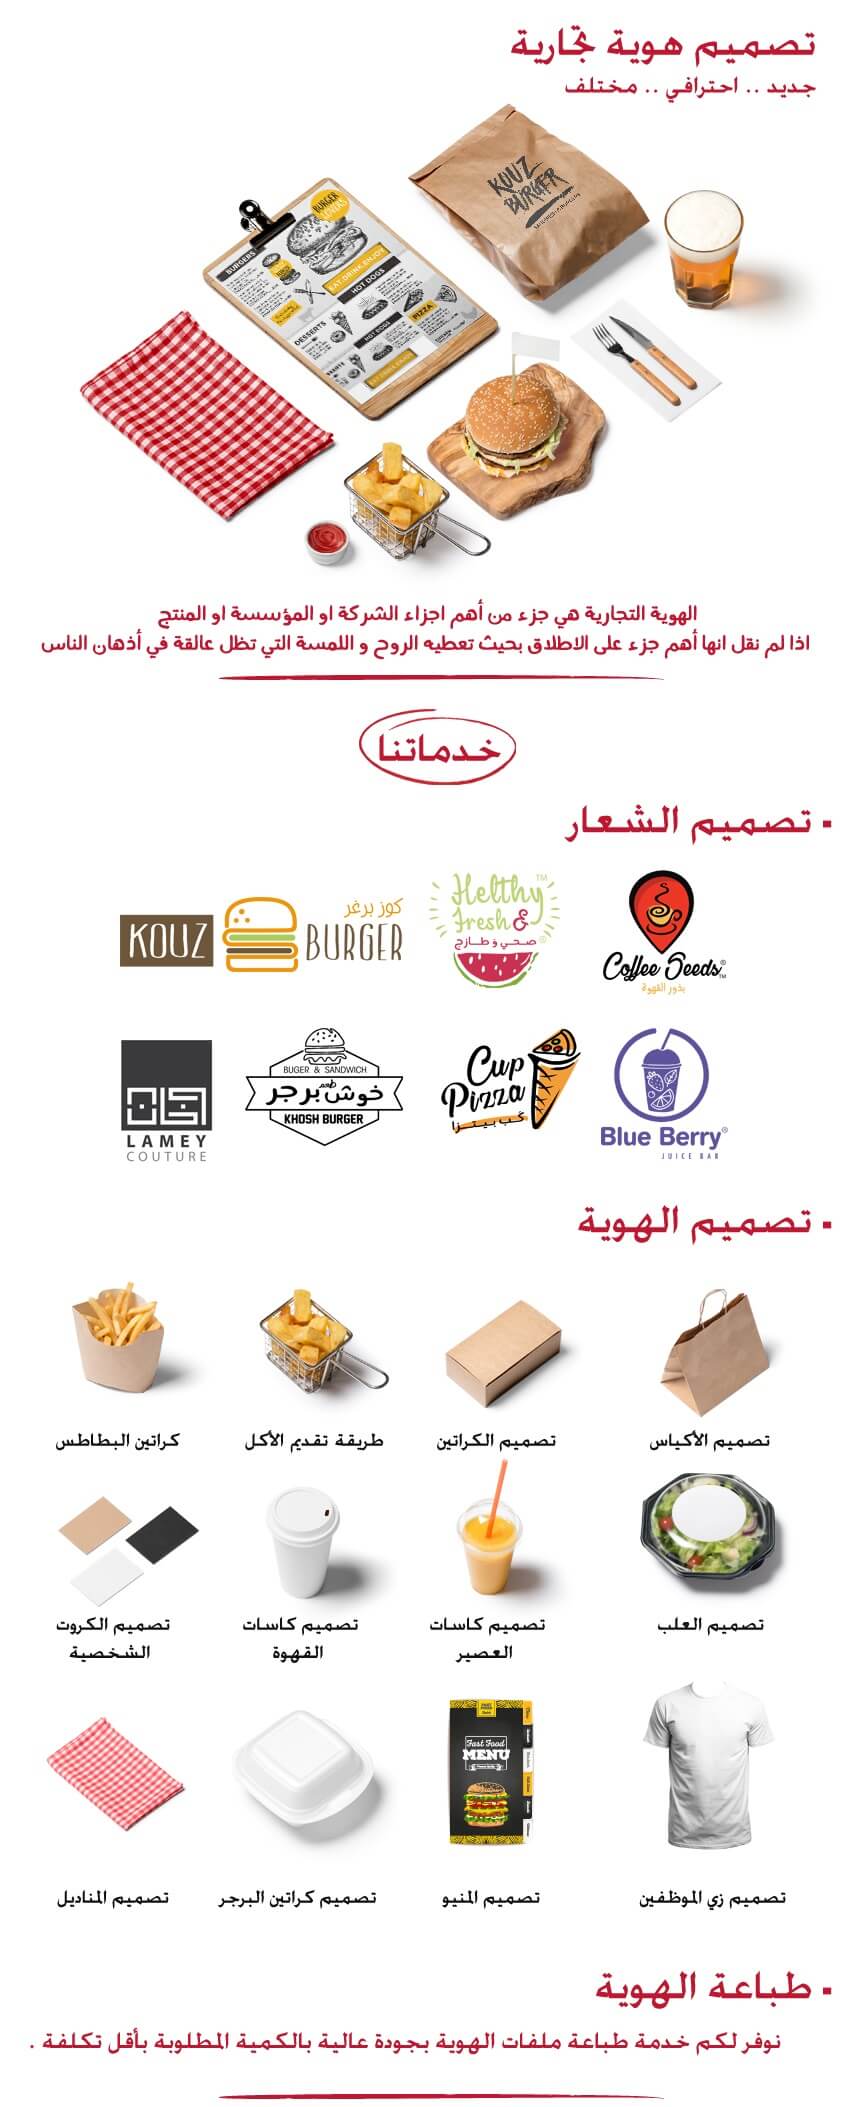 اسماء محلات تجارية في لبنان